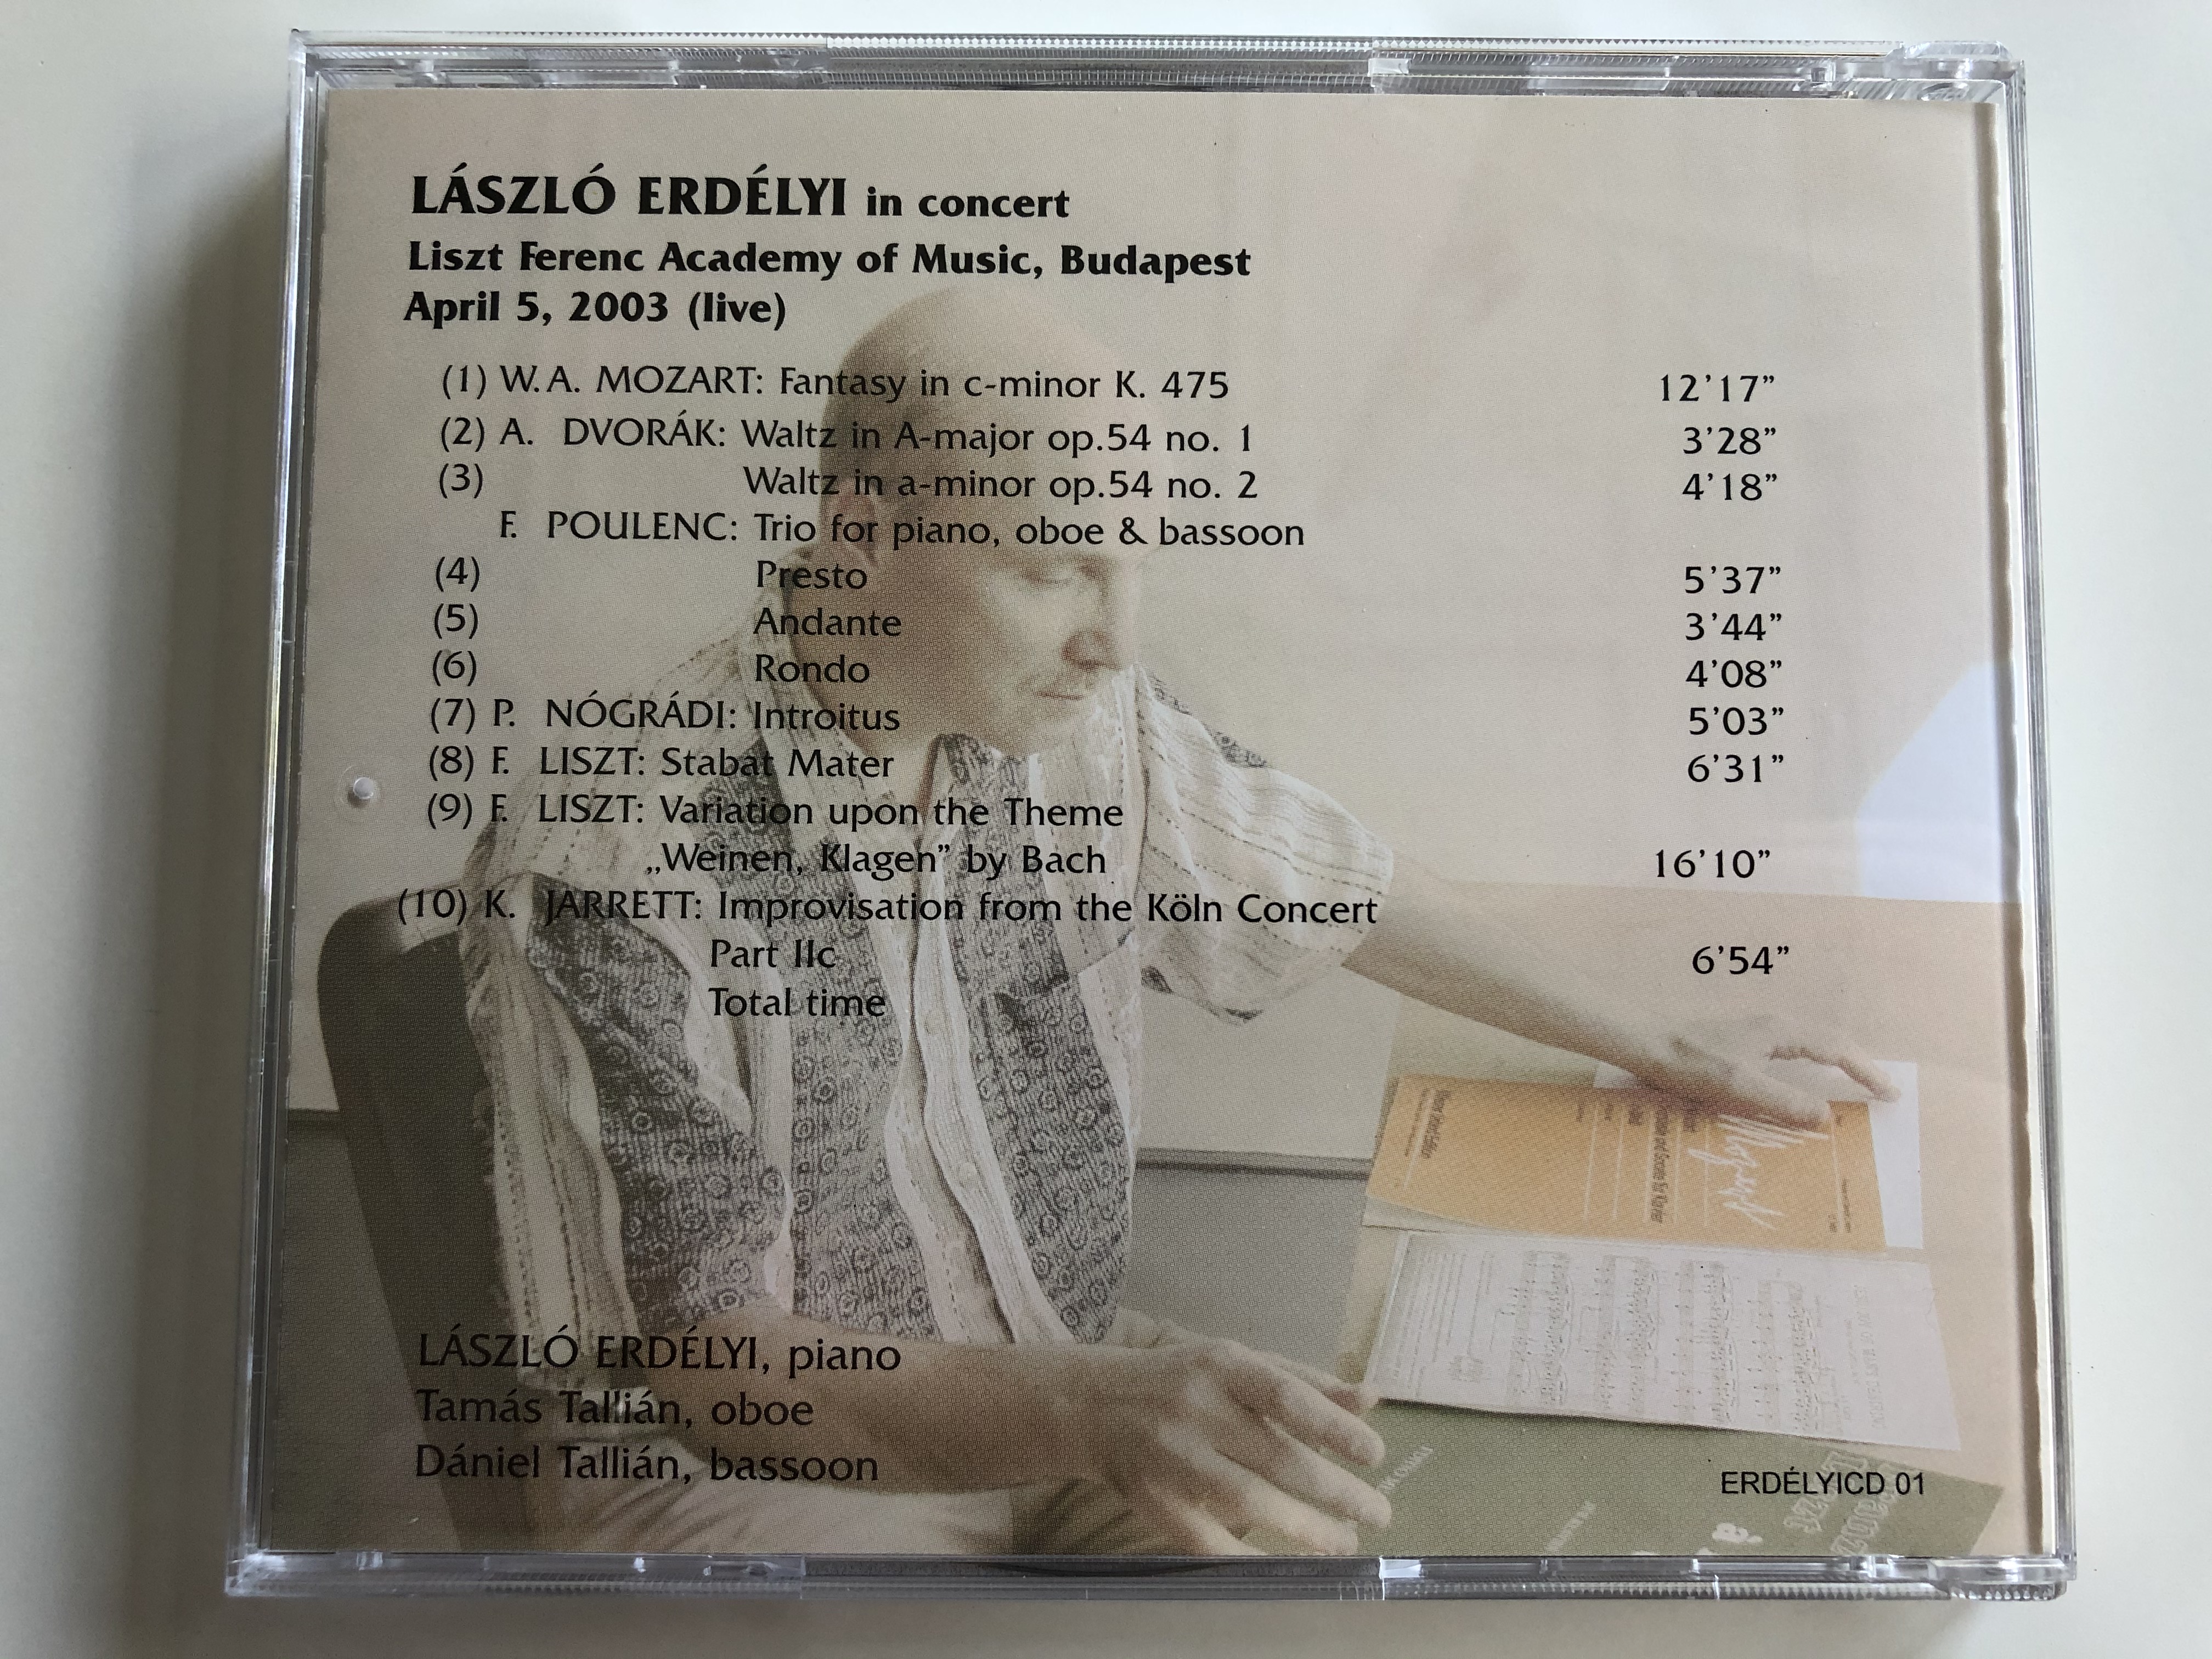 laszlo-erdelyi-in-concert-liszt-ferenc-academy-of-music-budapest-april-5-2003-live-mozart-dvorak-poulenc-nogradi-liszt-jarrett-erdelyi-audio-cd-erdelyicd-01-5-.jpg